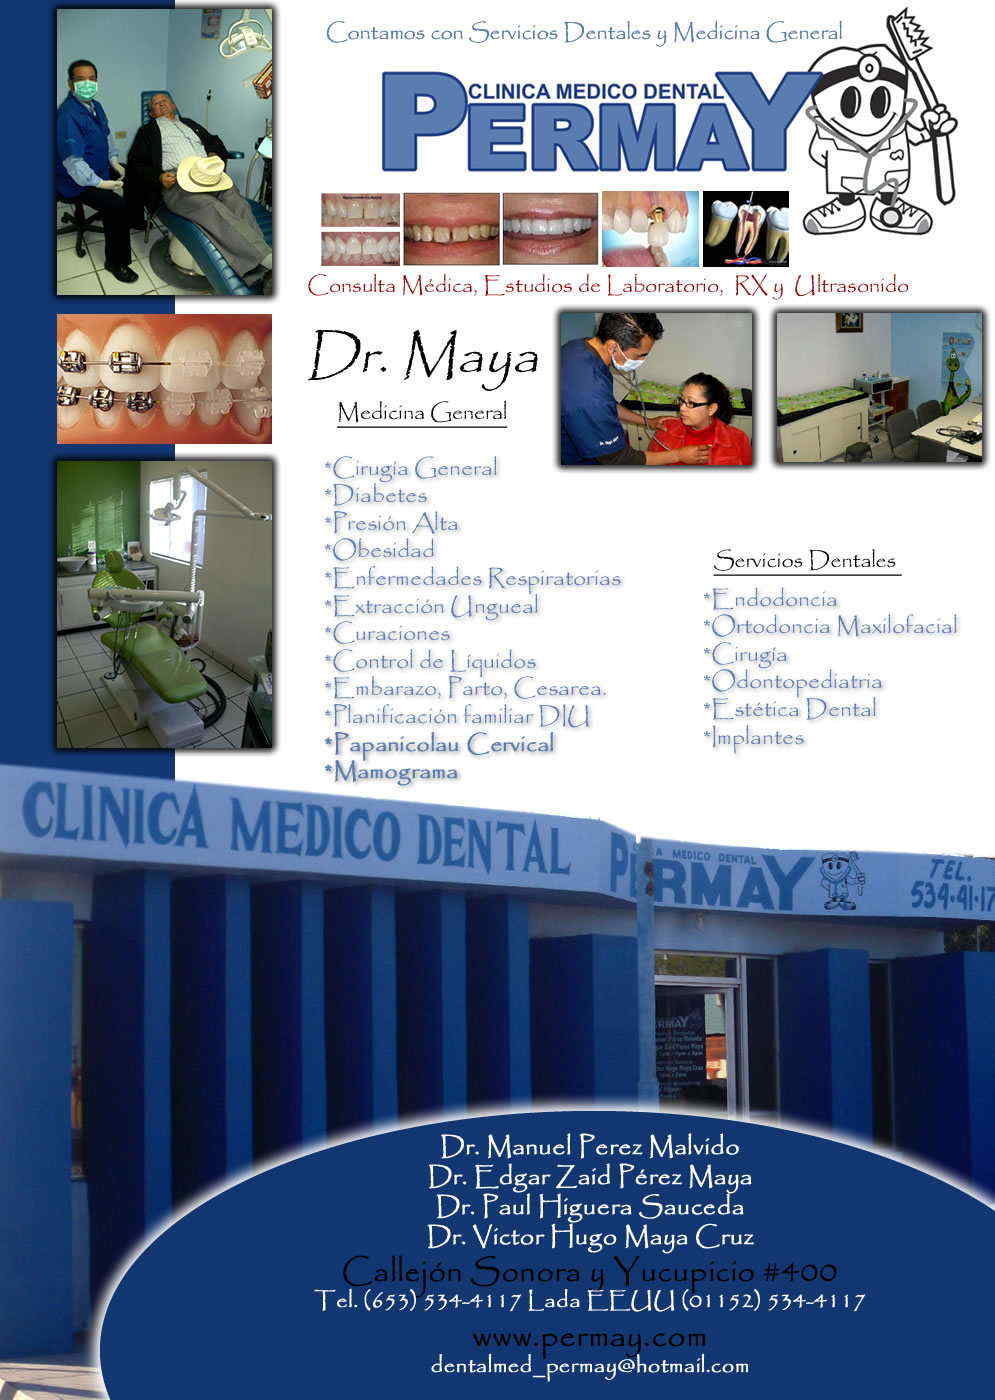 Dr. Victor Hugo Maya Cruz Medicina  General   PERMAY -CLINICA MEDICA DENTAL
NO SOLO PROCURO MI BIENESTAR 
TAMBIEN EL DE LOS DEMAS             